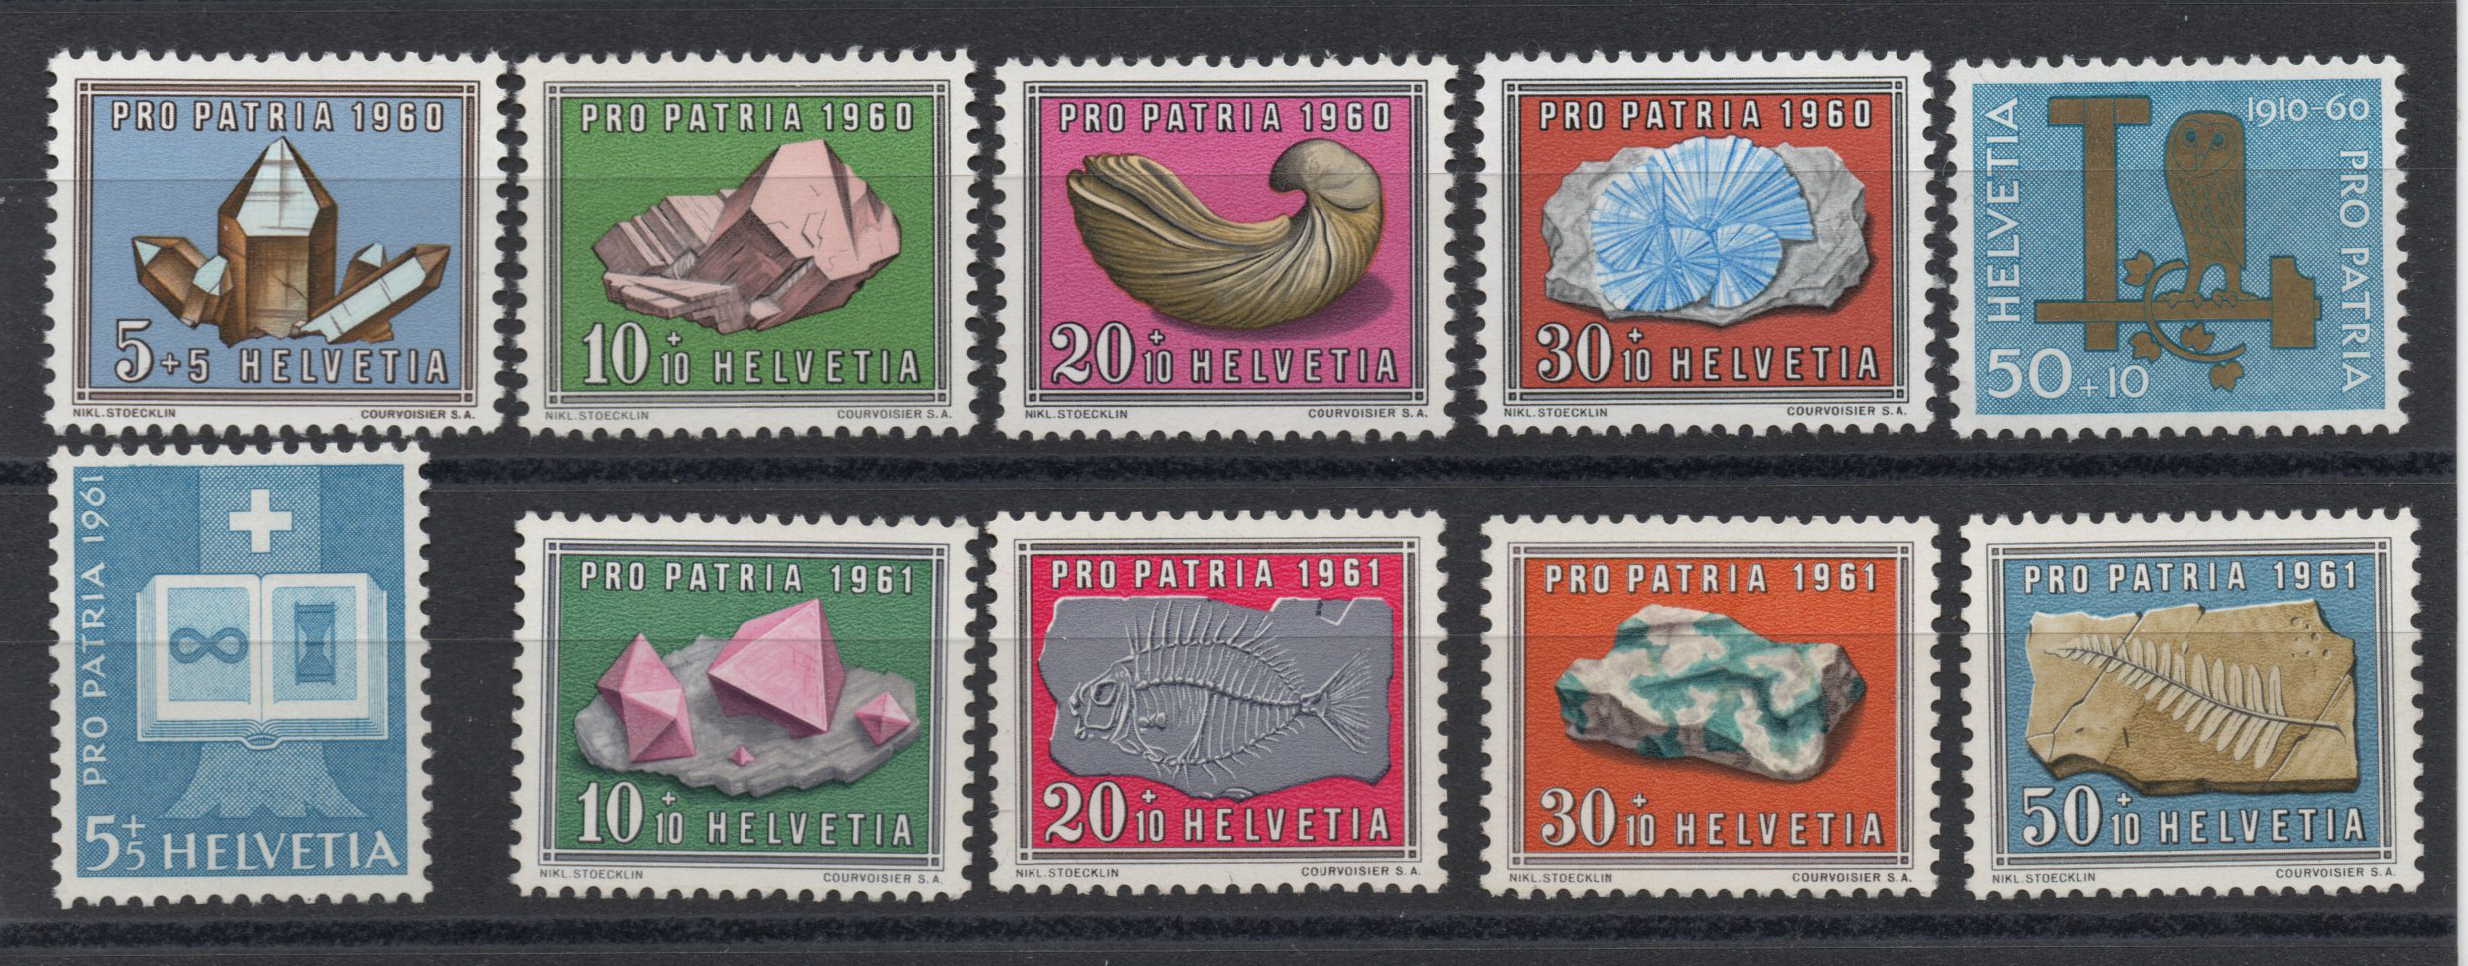 PRO PATRIA 1960-61 pf